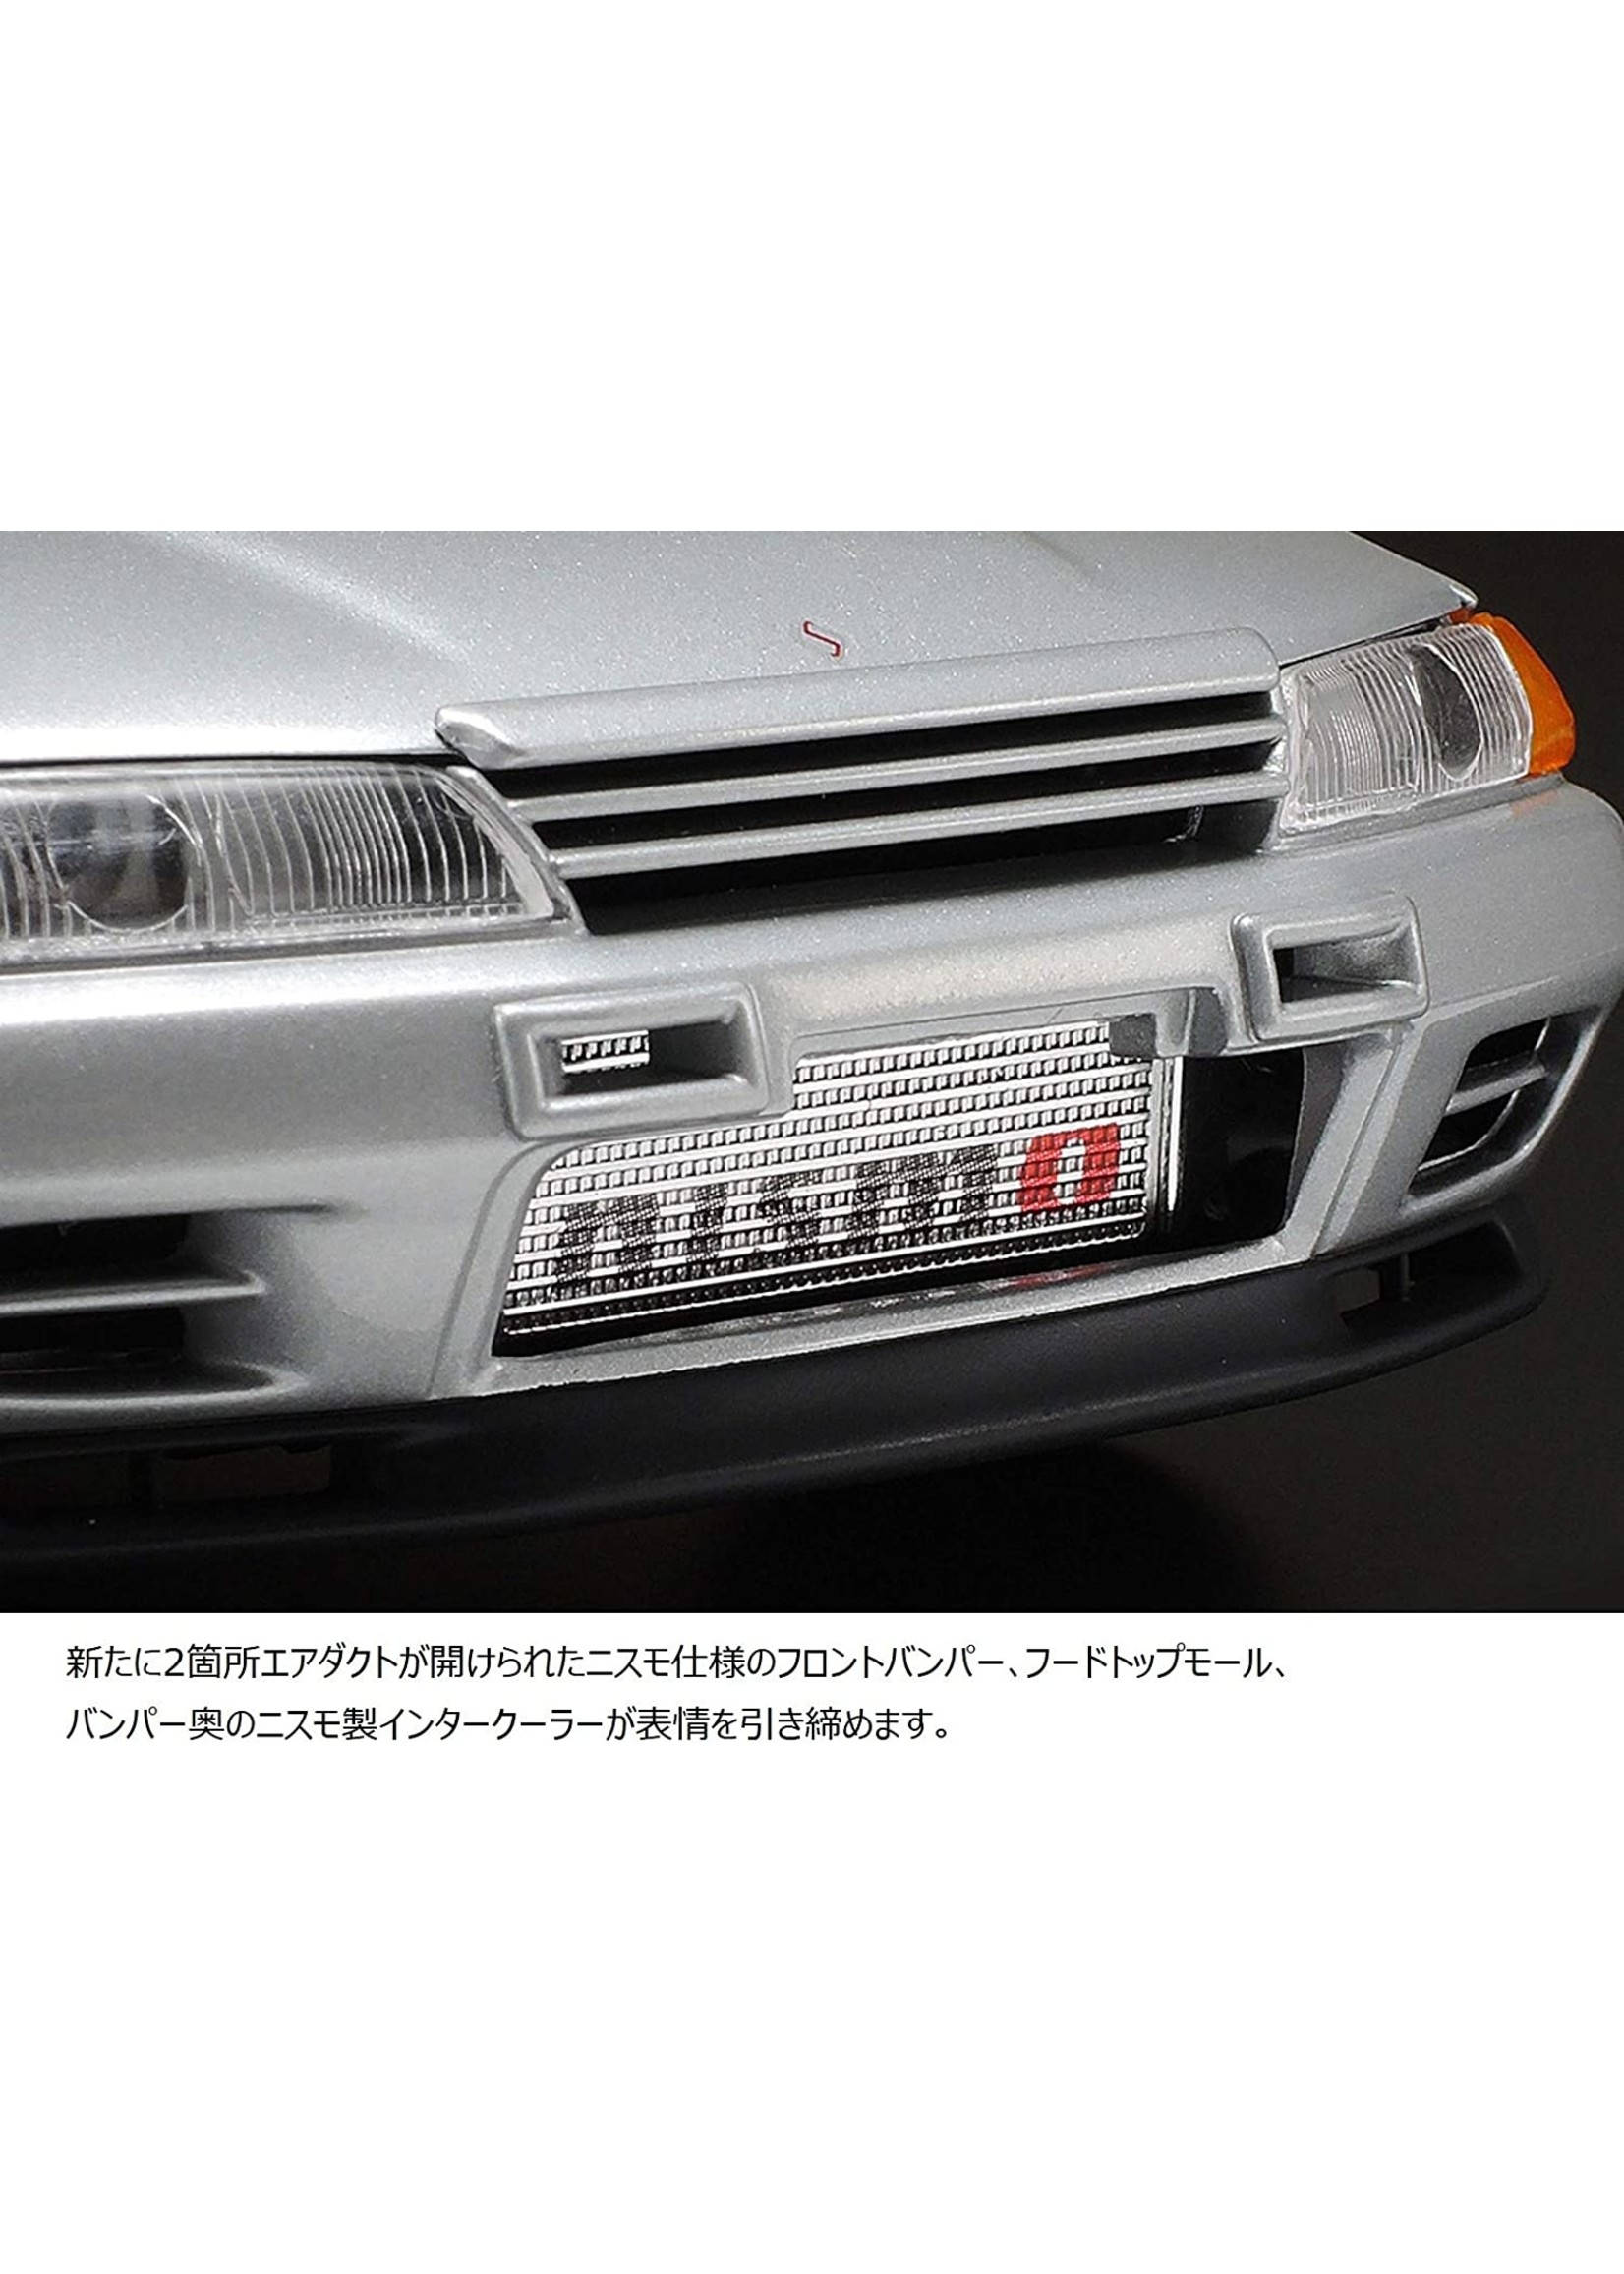 Tamiya 1/24 Nissan Skyline GT-R (R32) Nismo - Custom